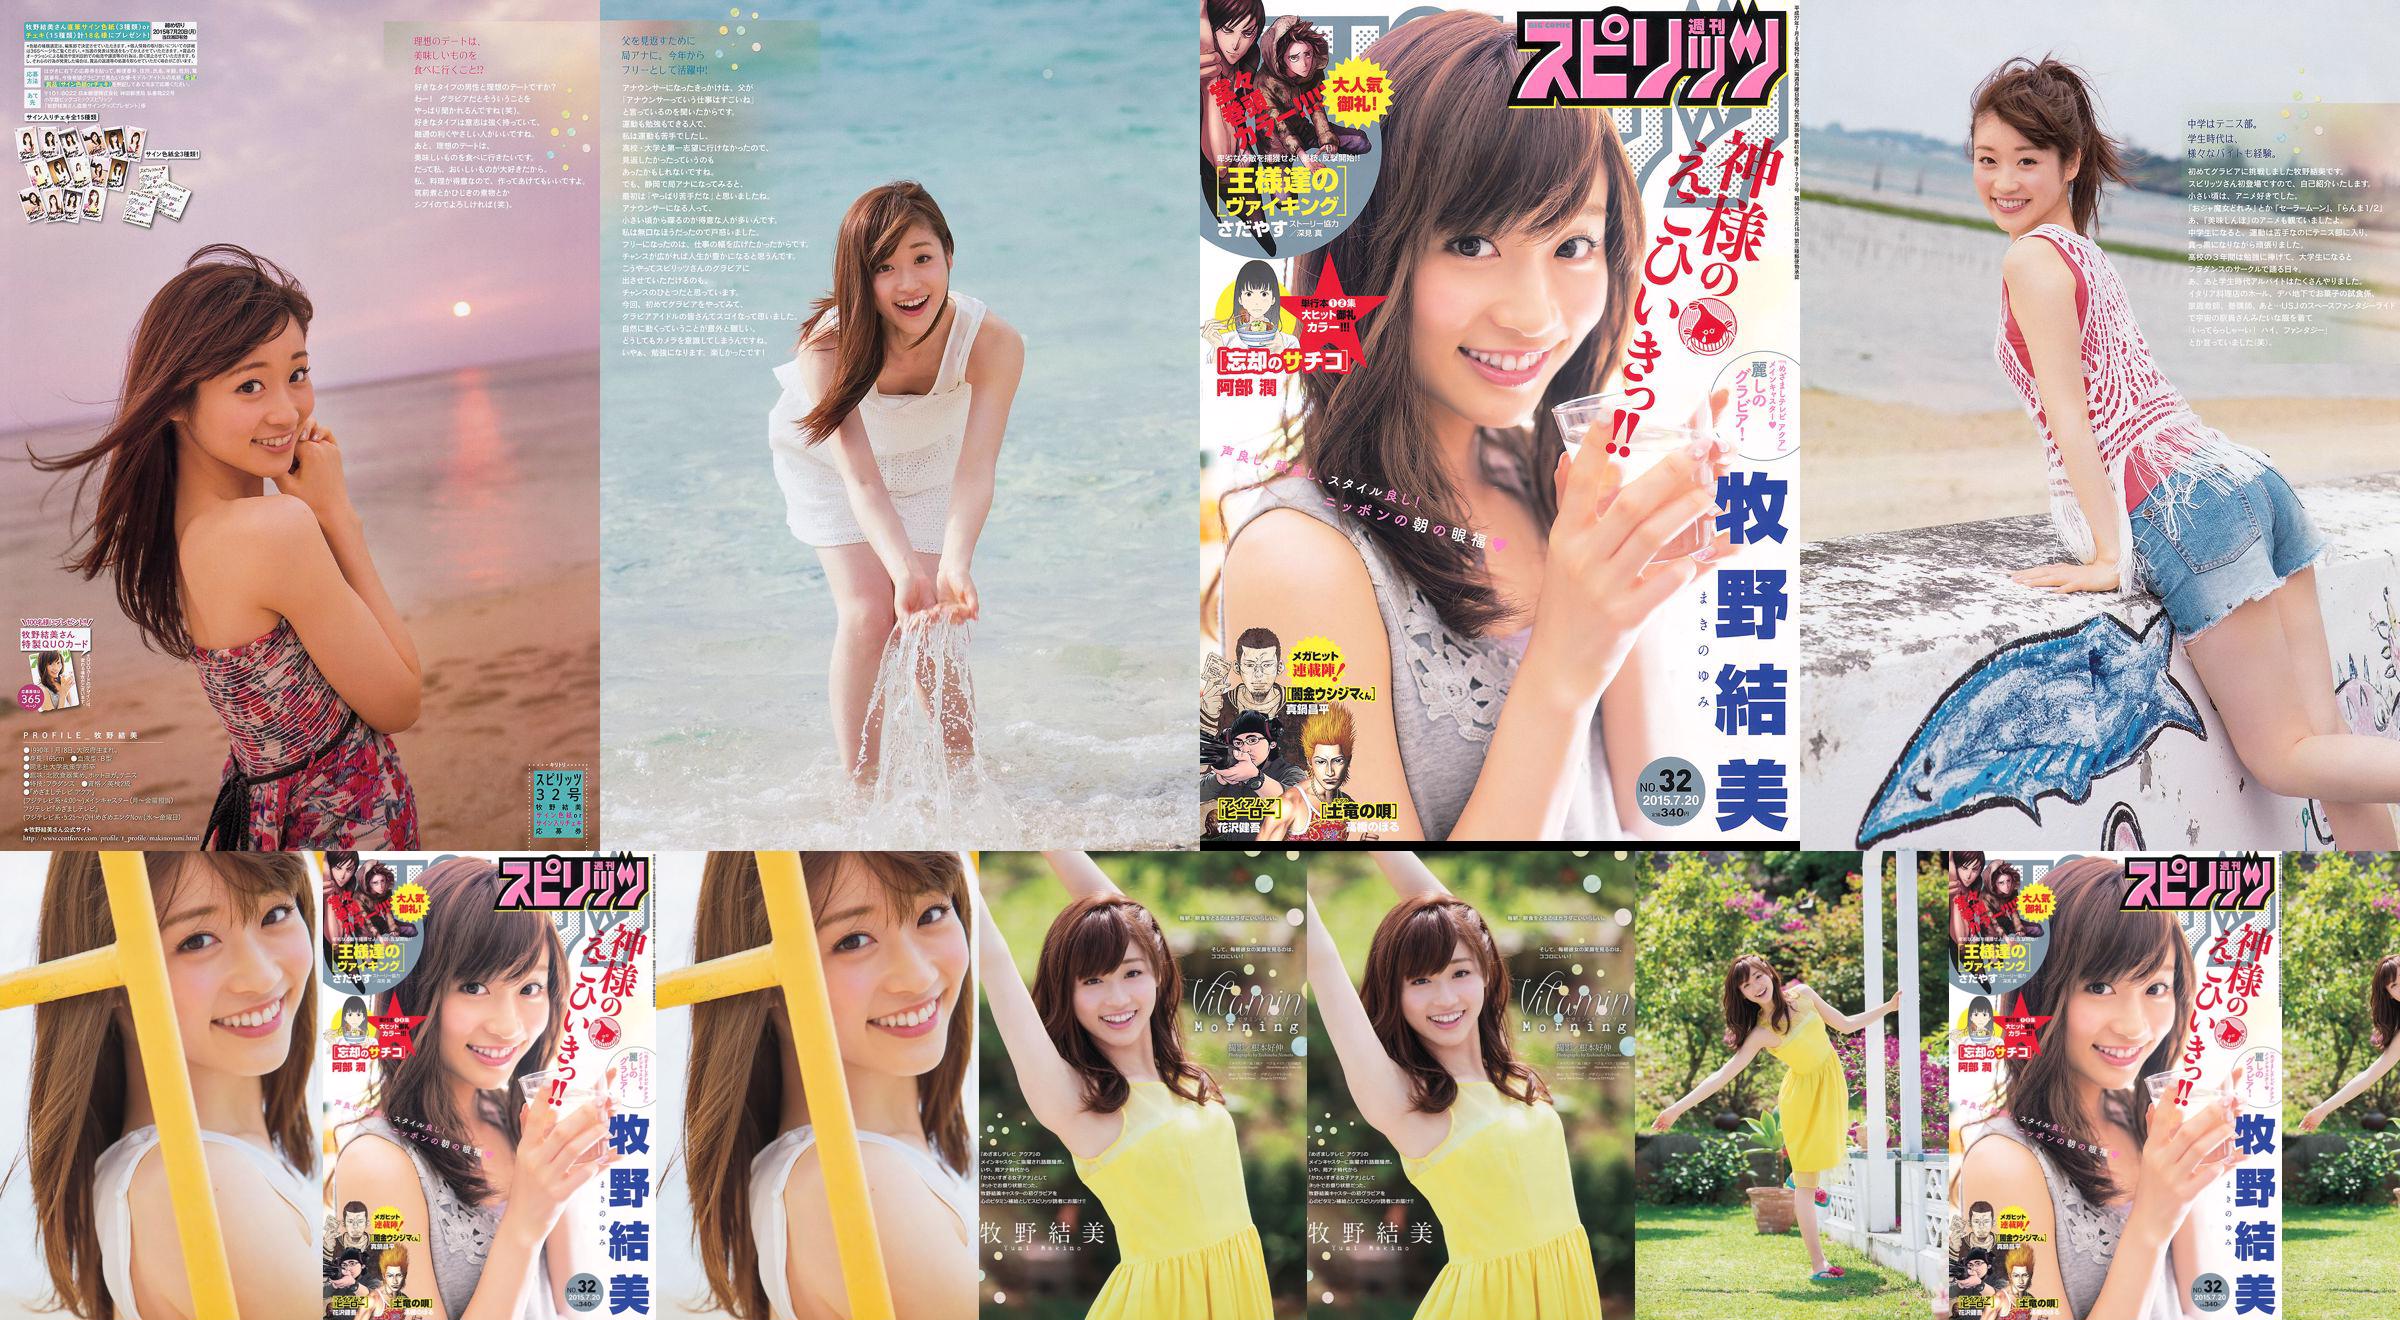 [Weekly Big Comic Spirits] Yumi Makino 2015 No.32 Photo Magazine No.d84706 Pagina 4